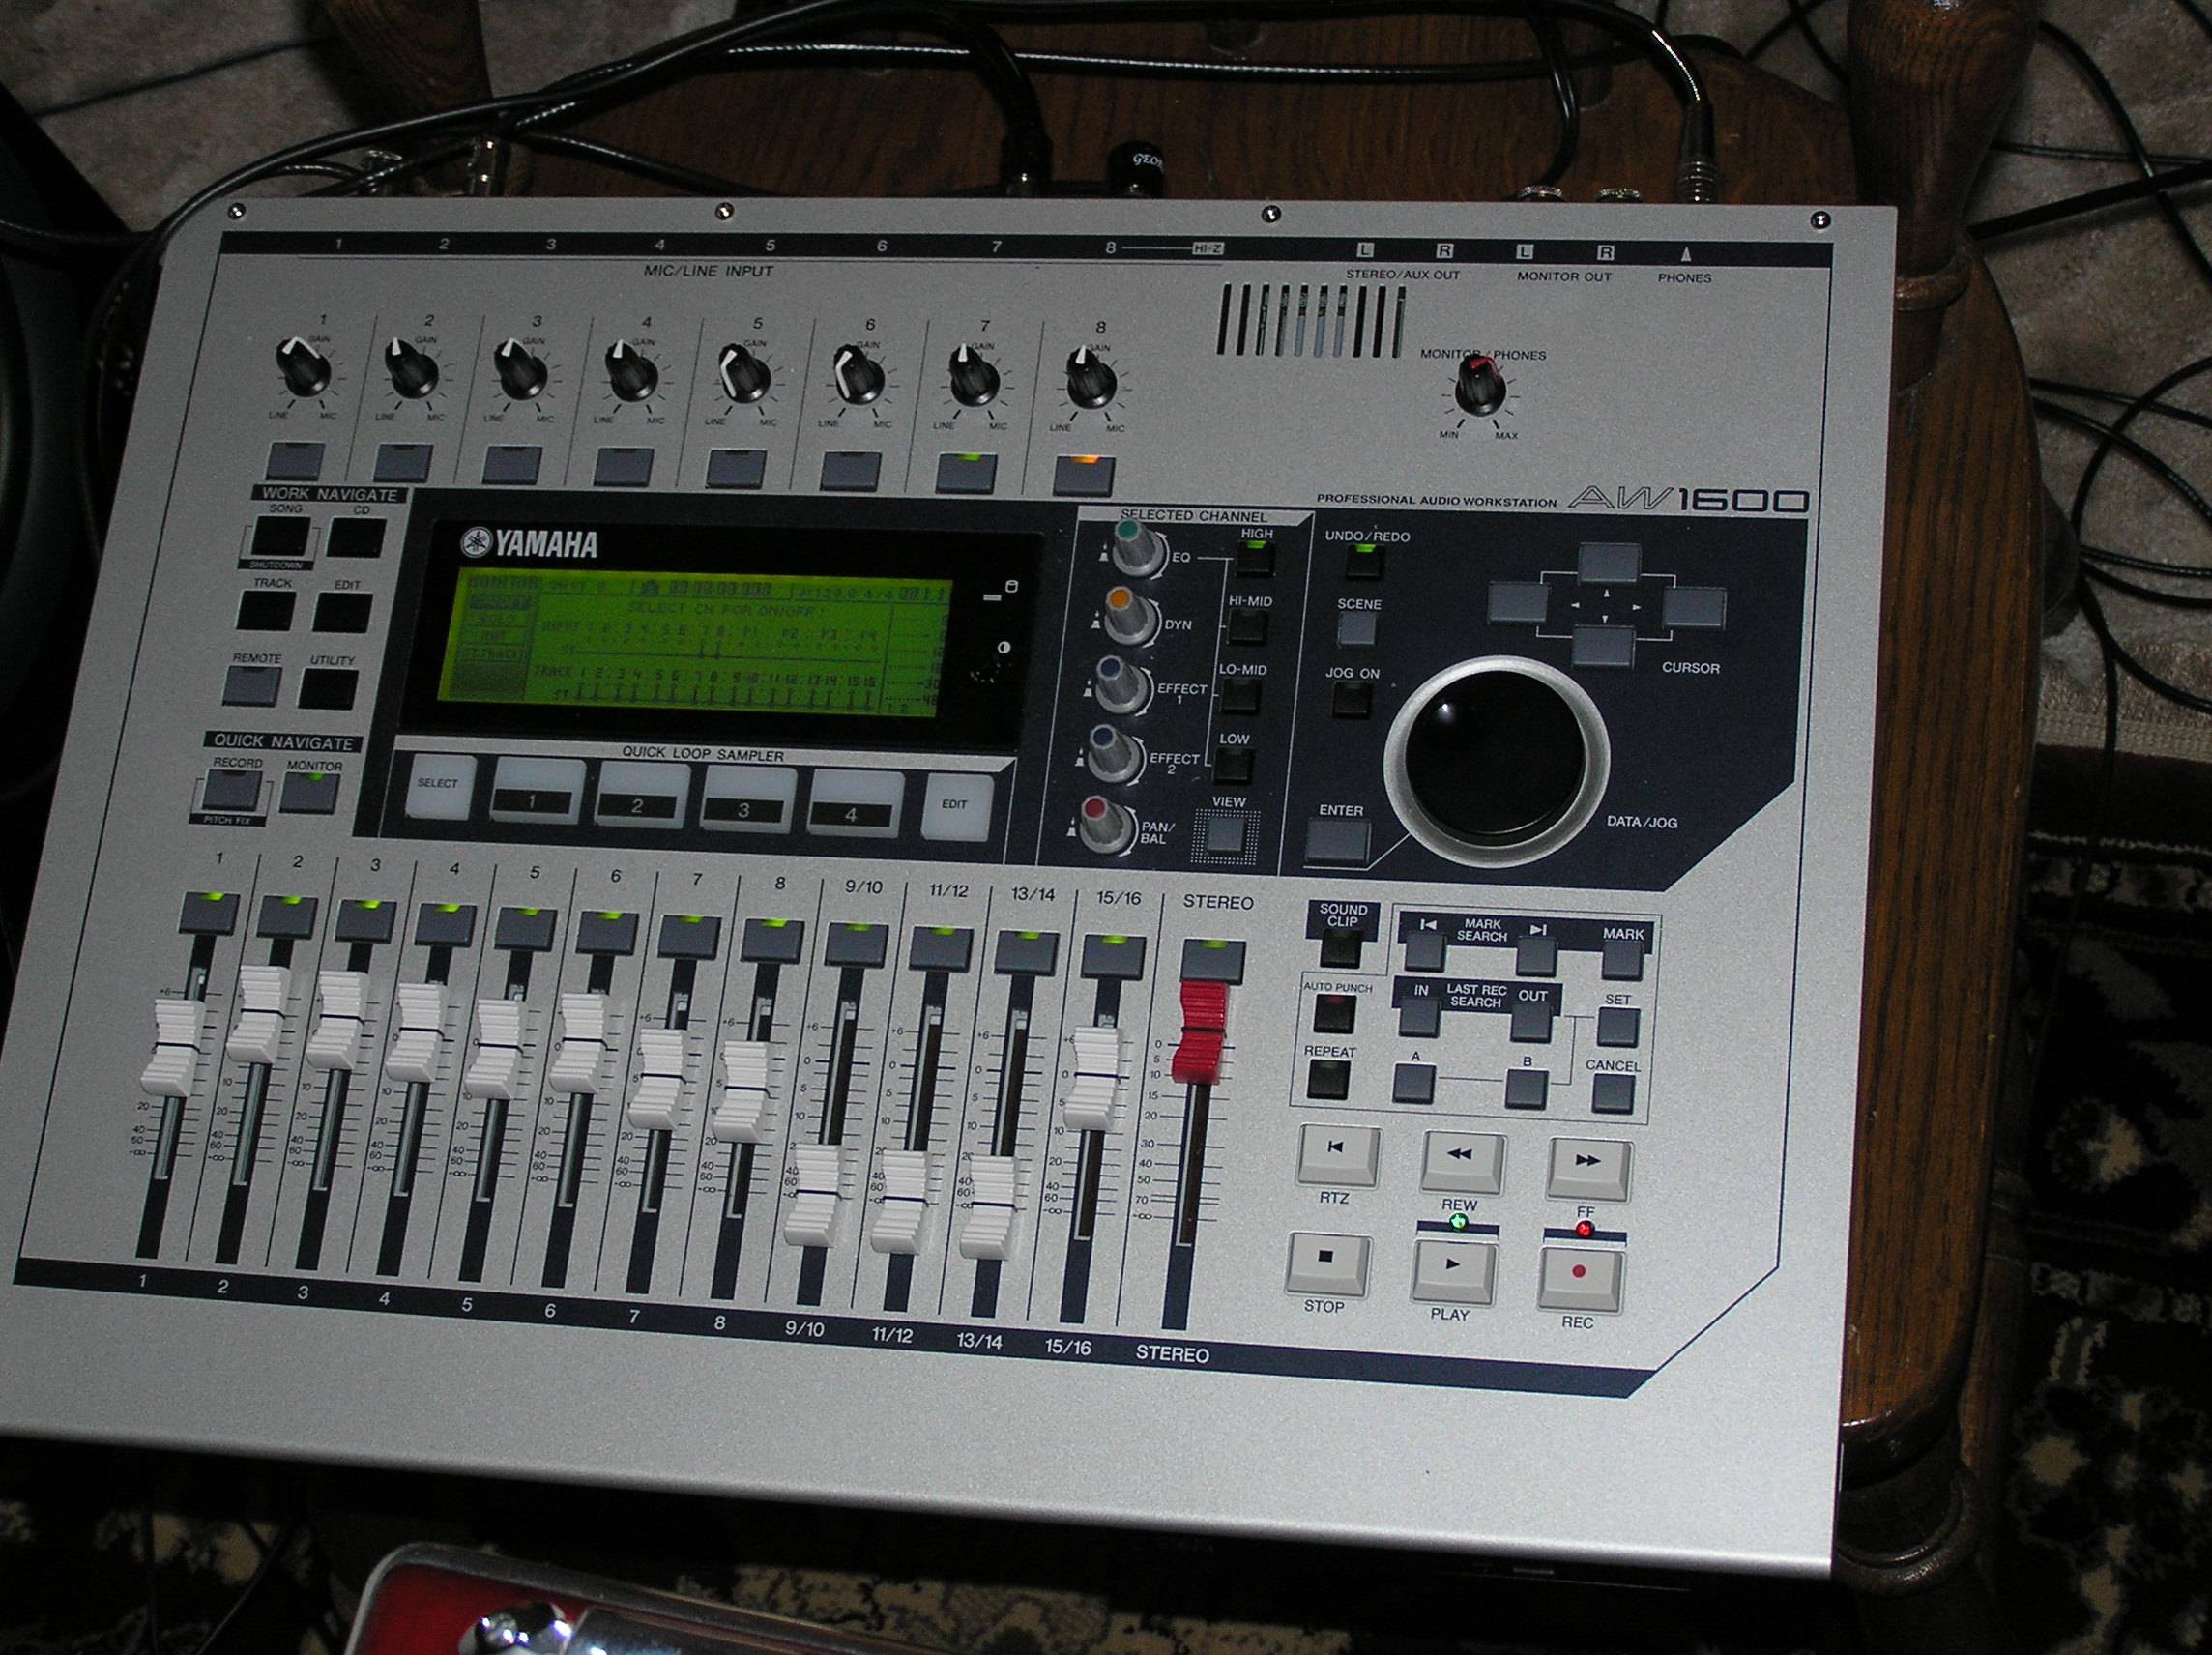 Home Recording Studio